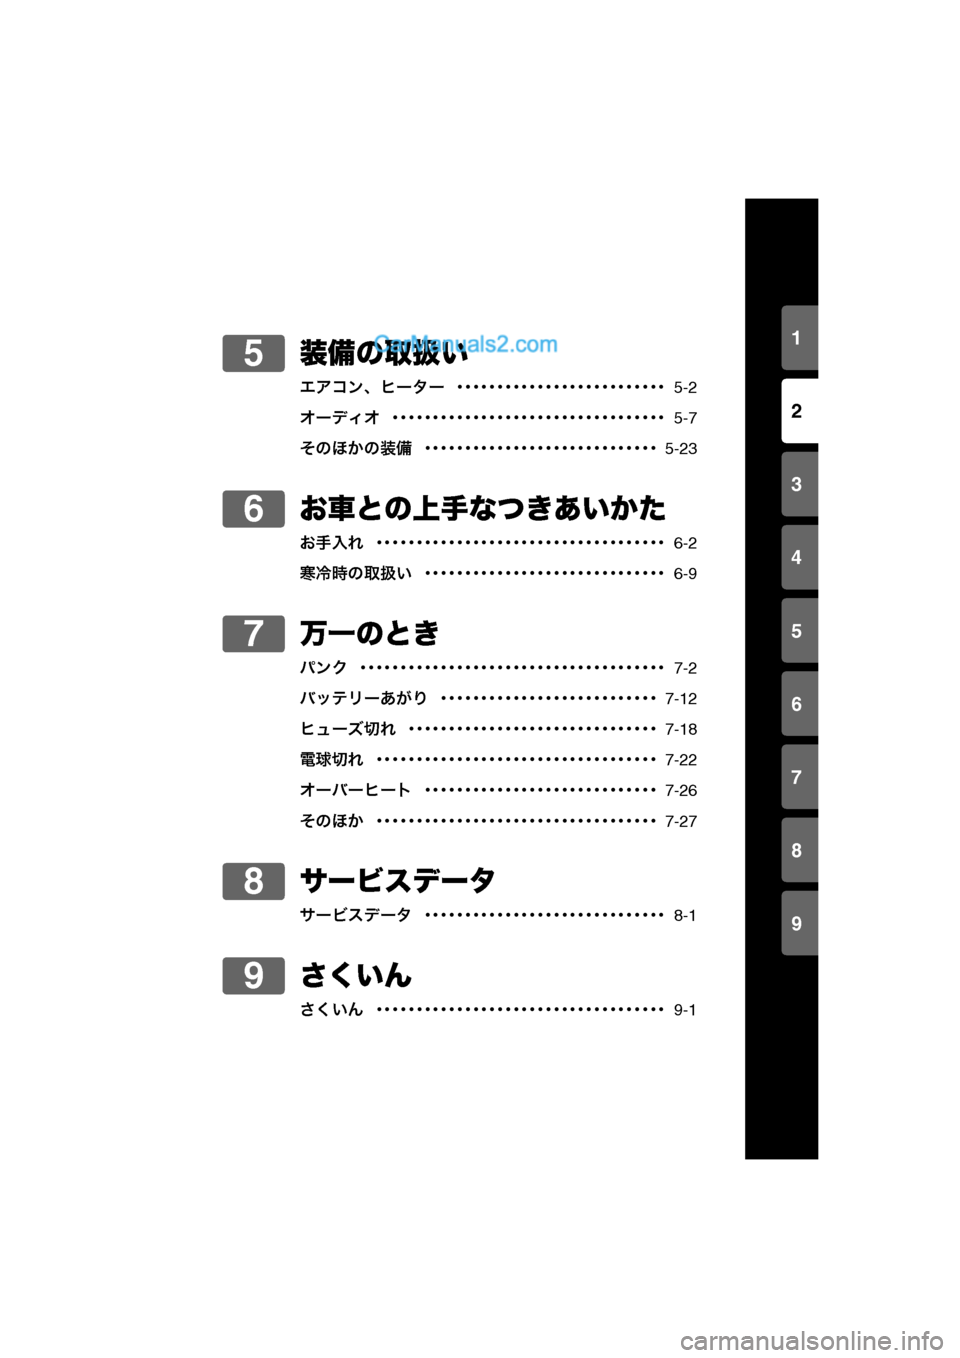 MAZDA MODEL CARROL 2013  取扱説明書 (キャロル) (in Japanese) 1
2
3
4
5
6
7
8
9
0-2
装備の取扱い
エアコン、ヒーター  ･･････････････････････････  5-2
オーディオ  ･････････�